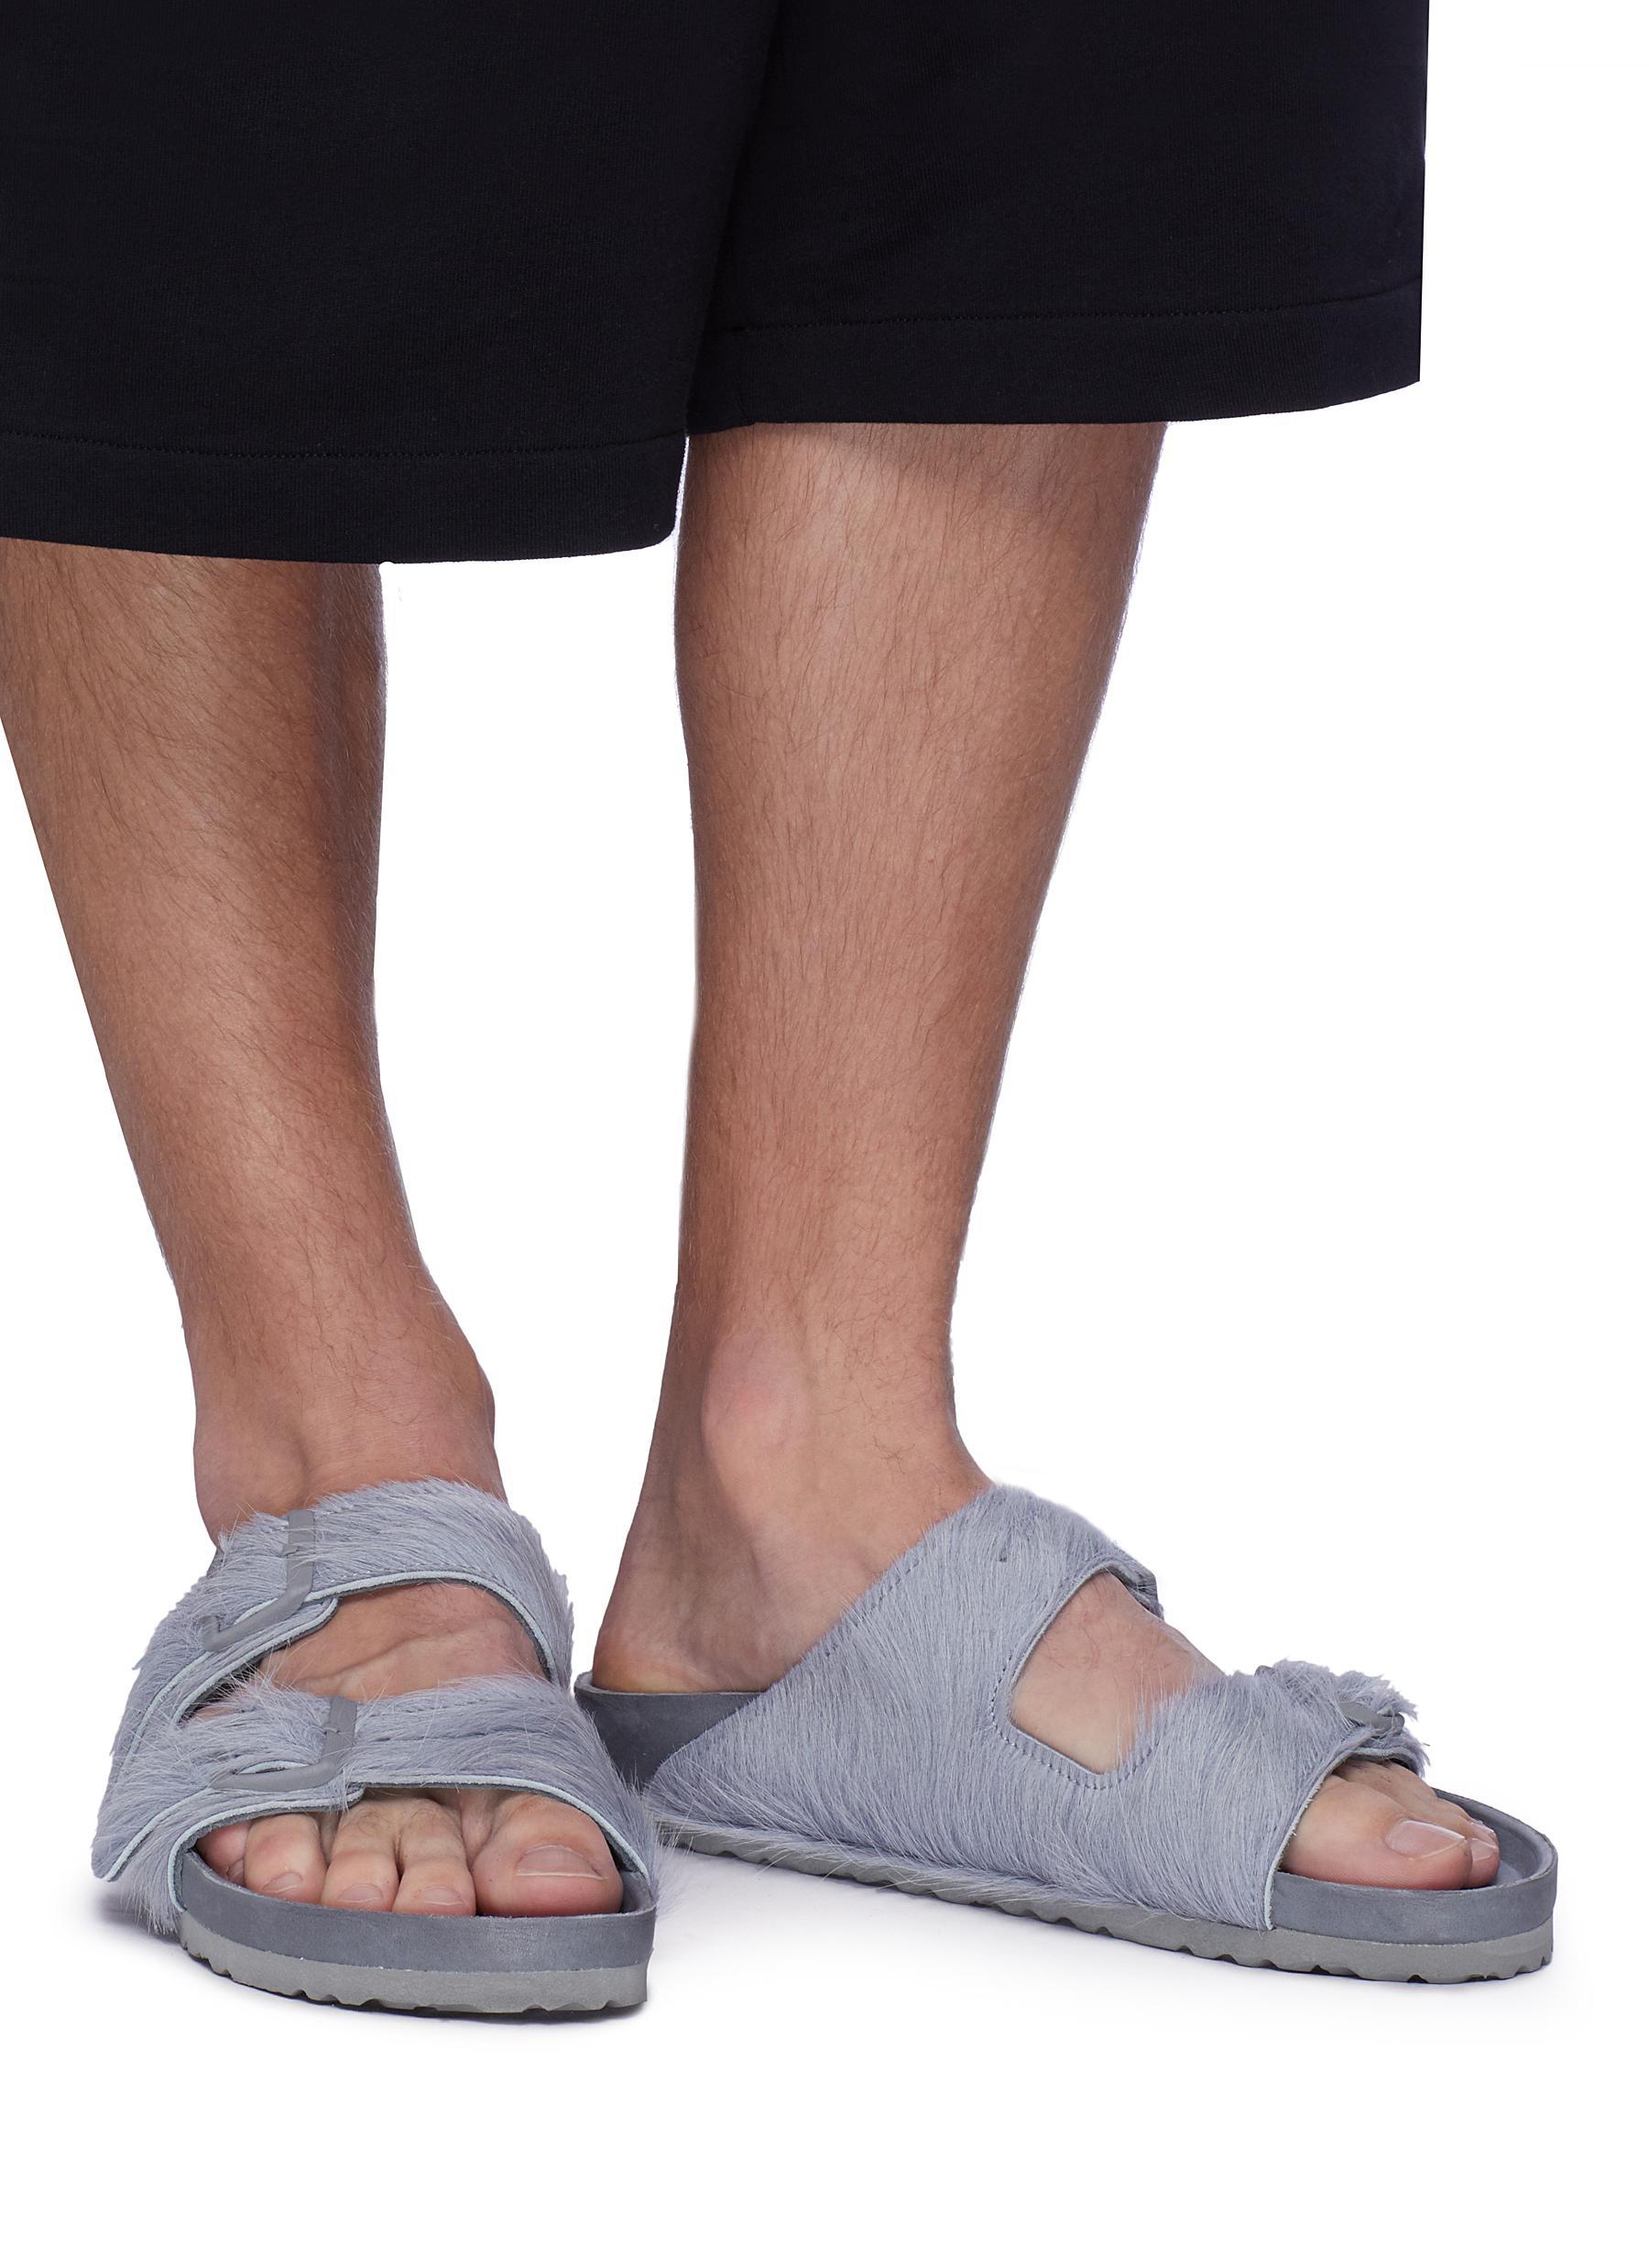 Rick Owens X Birkenstock 'arizona' Cow Fur Sandals in Gray for Men | Lyst